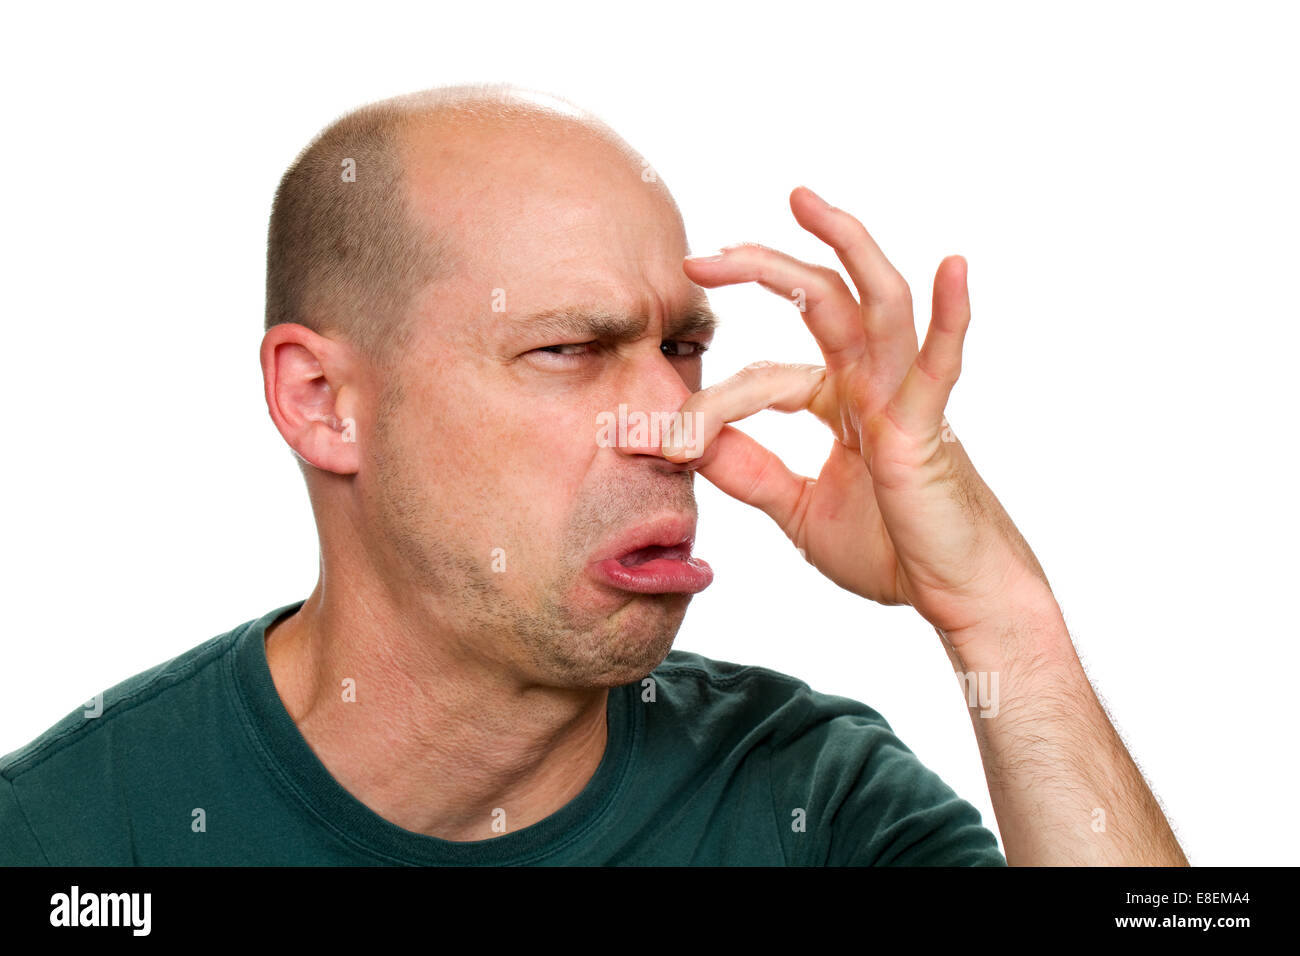 El hombre huele algo stinky y pellizca la nariz para detener el mal olor. Foto de stock